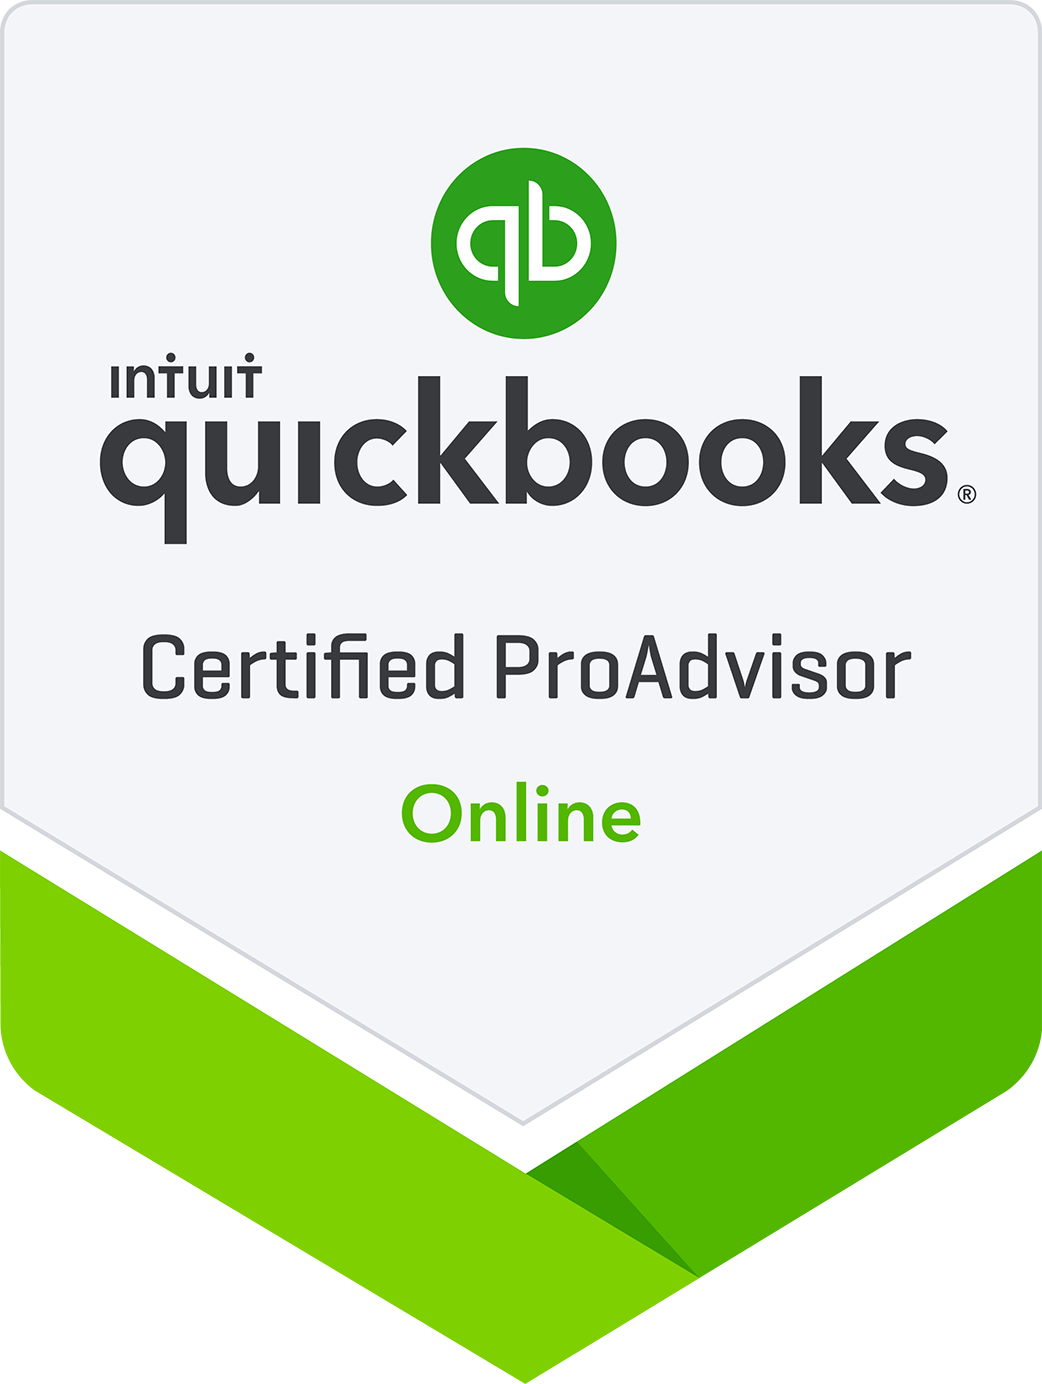 Certified QuickBooks Online Proadvisor in Centennial, CO Denver, CO